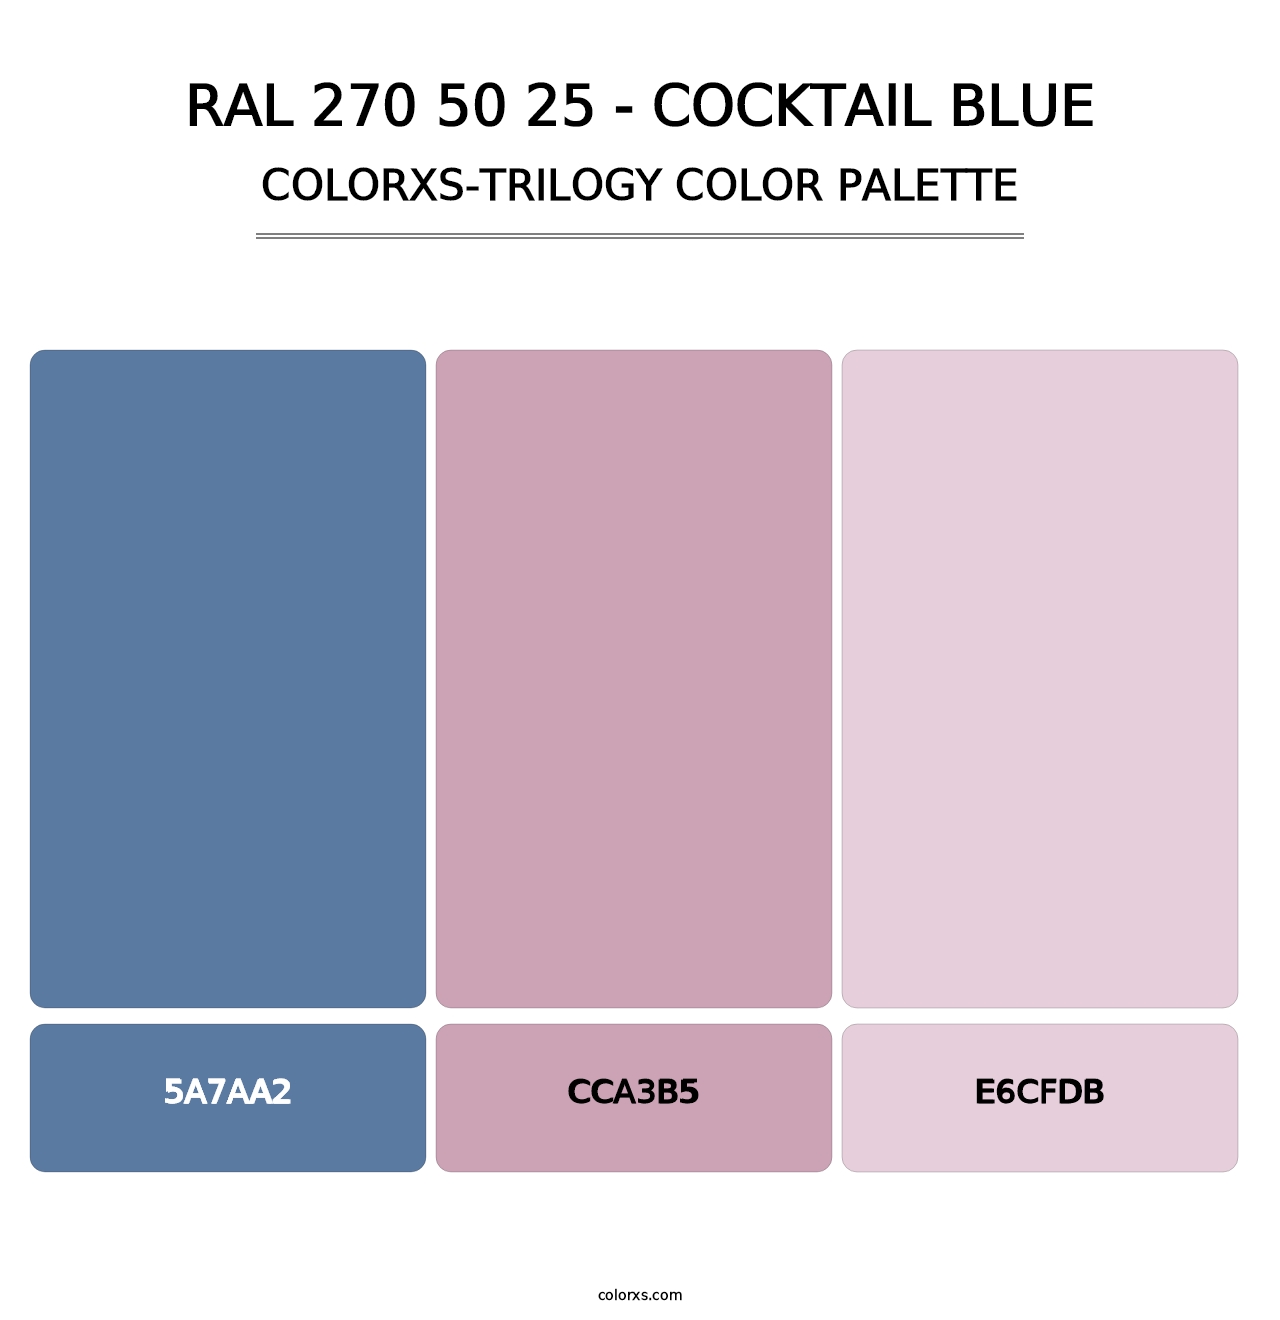 RAL 270 50 25 - Cocktail Blue - Colorxs Trilogy Palette